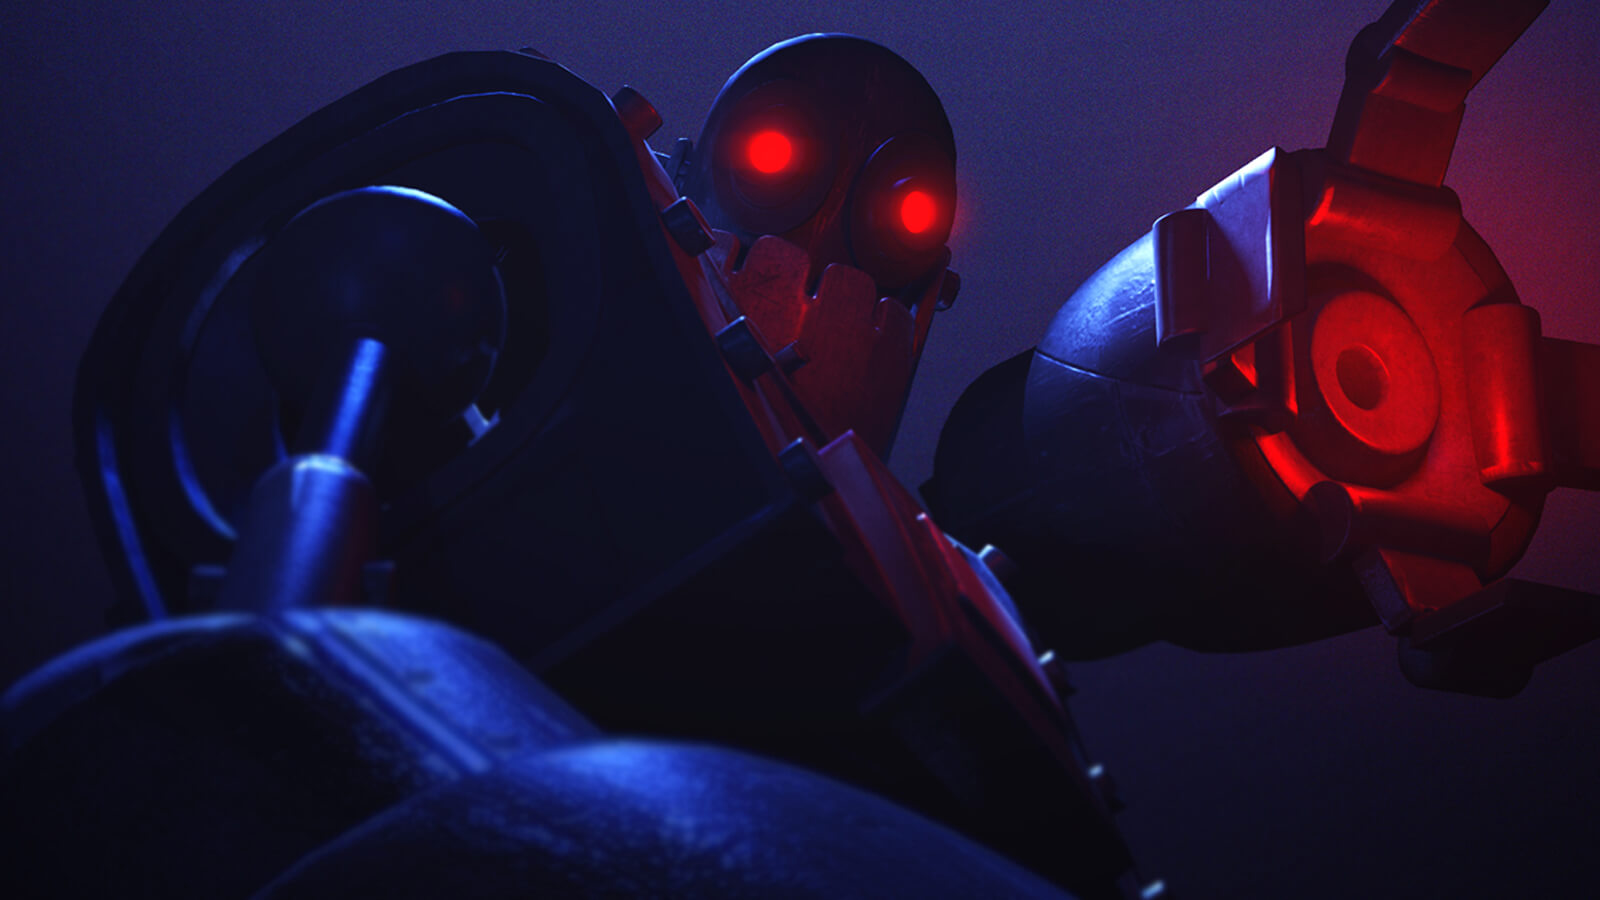 Vista en contrapicado de un robot metálico levemente iluminado que levanta una mano con sus garras abiertas. Tanto sus garras como sus ojos brillan en rojo en la oscuridad.